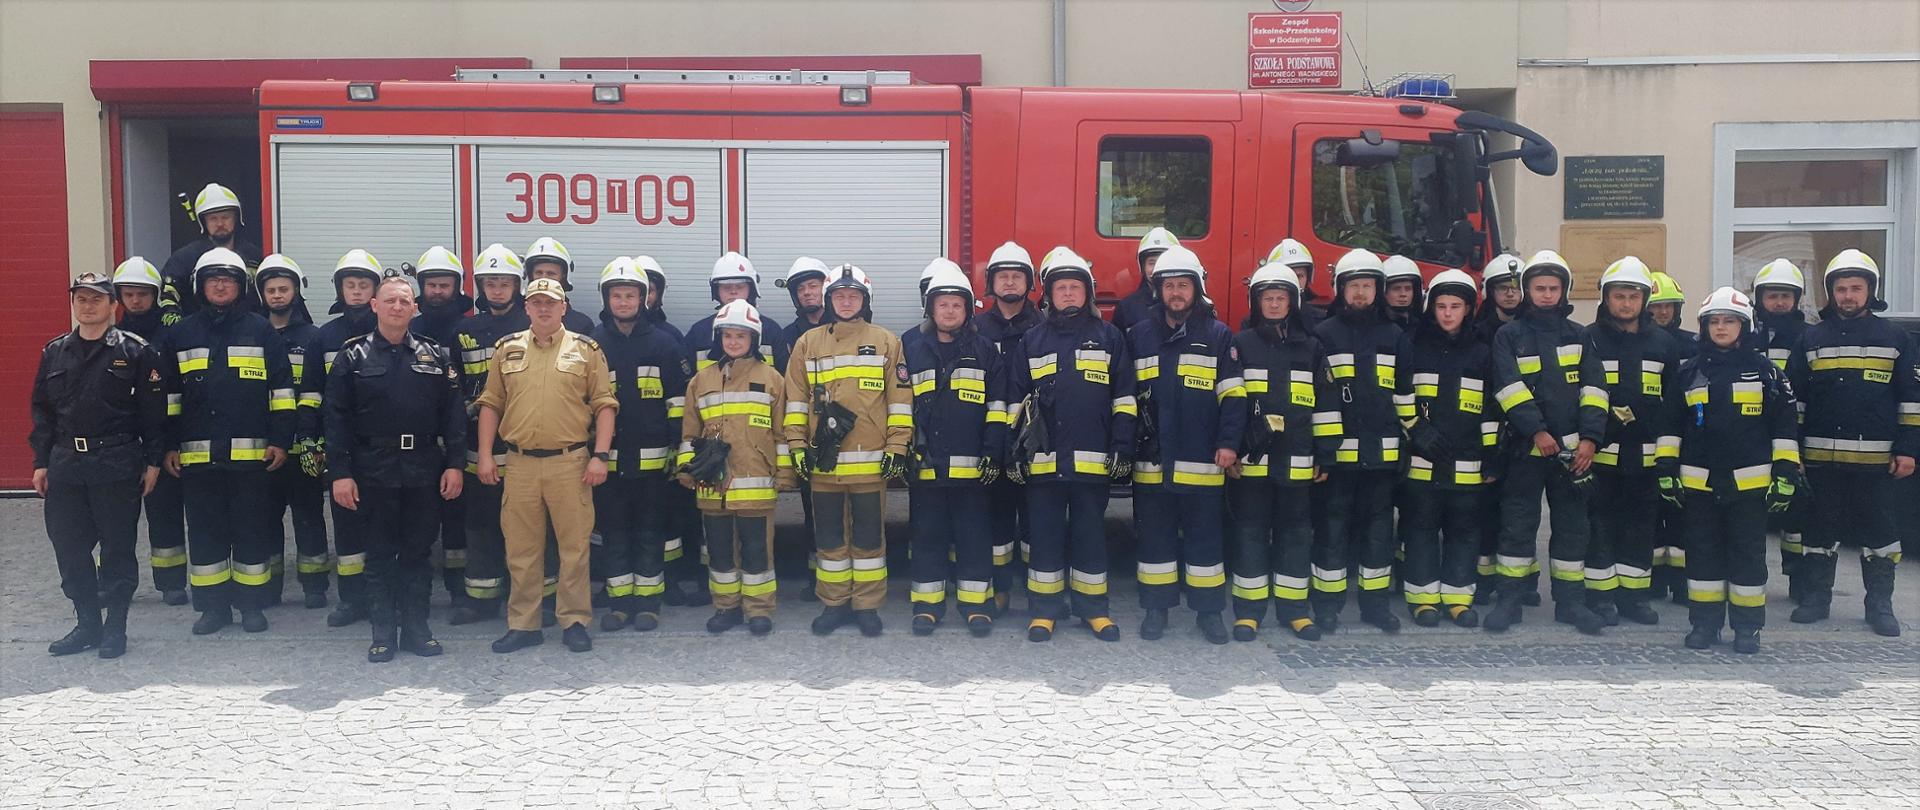 Na zdjęciu przedstawiono grupę druhów, który brali udział w szkoleniu podstawowym wraz z instruktorami z komendy miejskiej straży pożarnej w Kielcach na tle samochodu pożarniczego. 